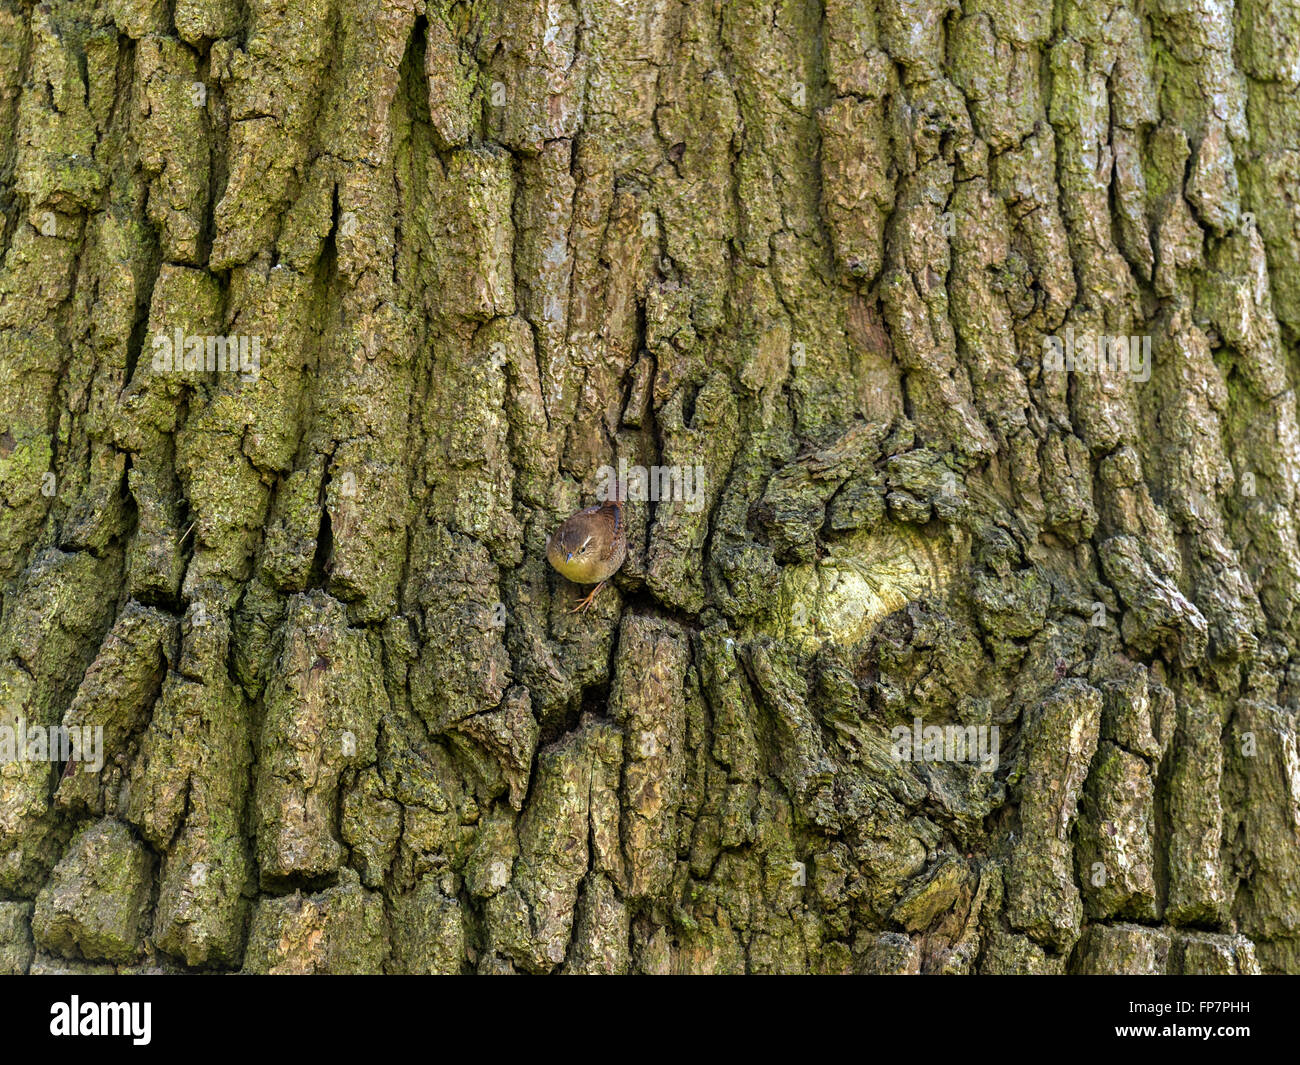 "British Wren (Troglodytidae) rappresentata chiacchiere, quasi invisibile, si mescola al tronco di albero' Foto Stock